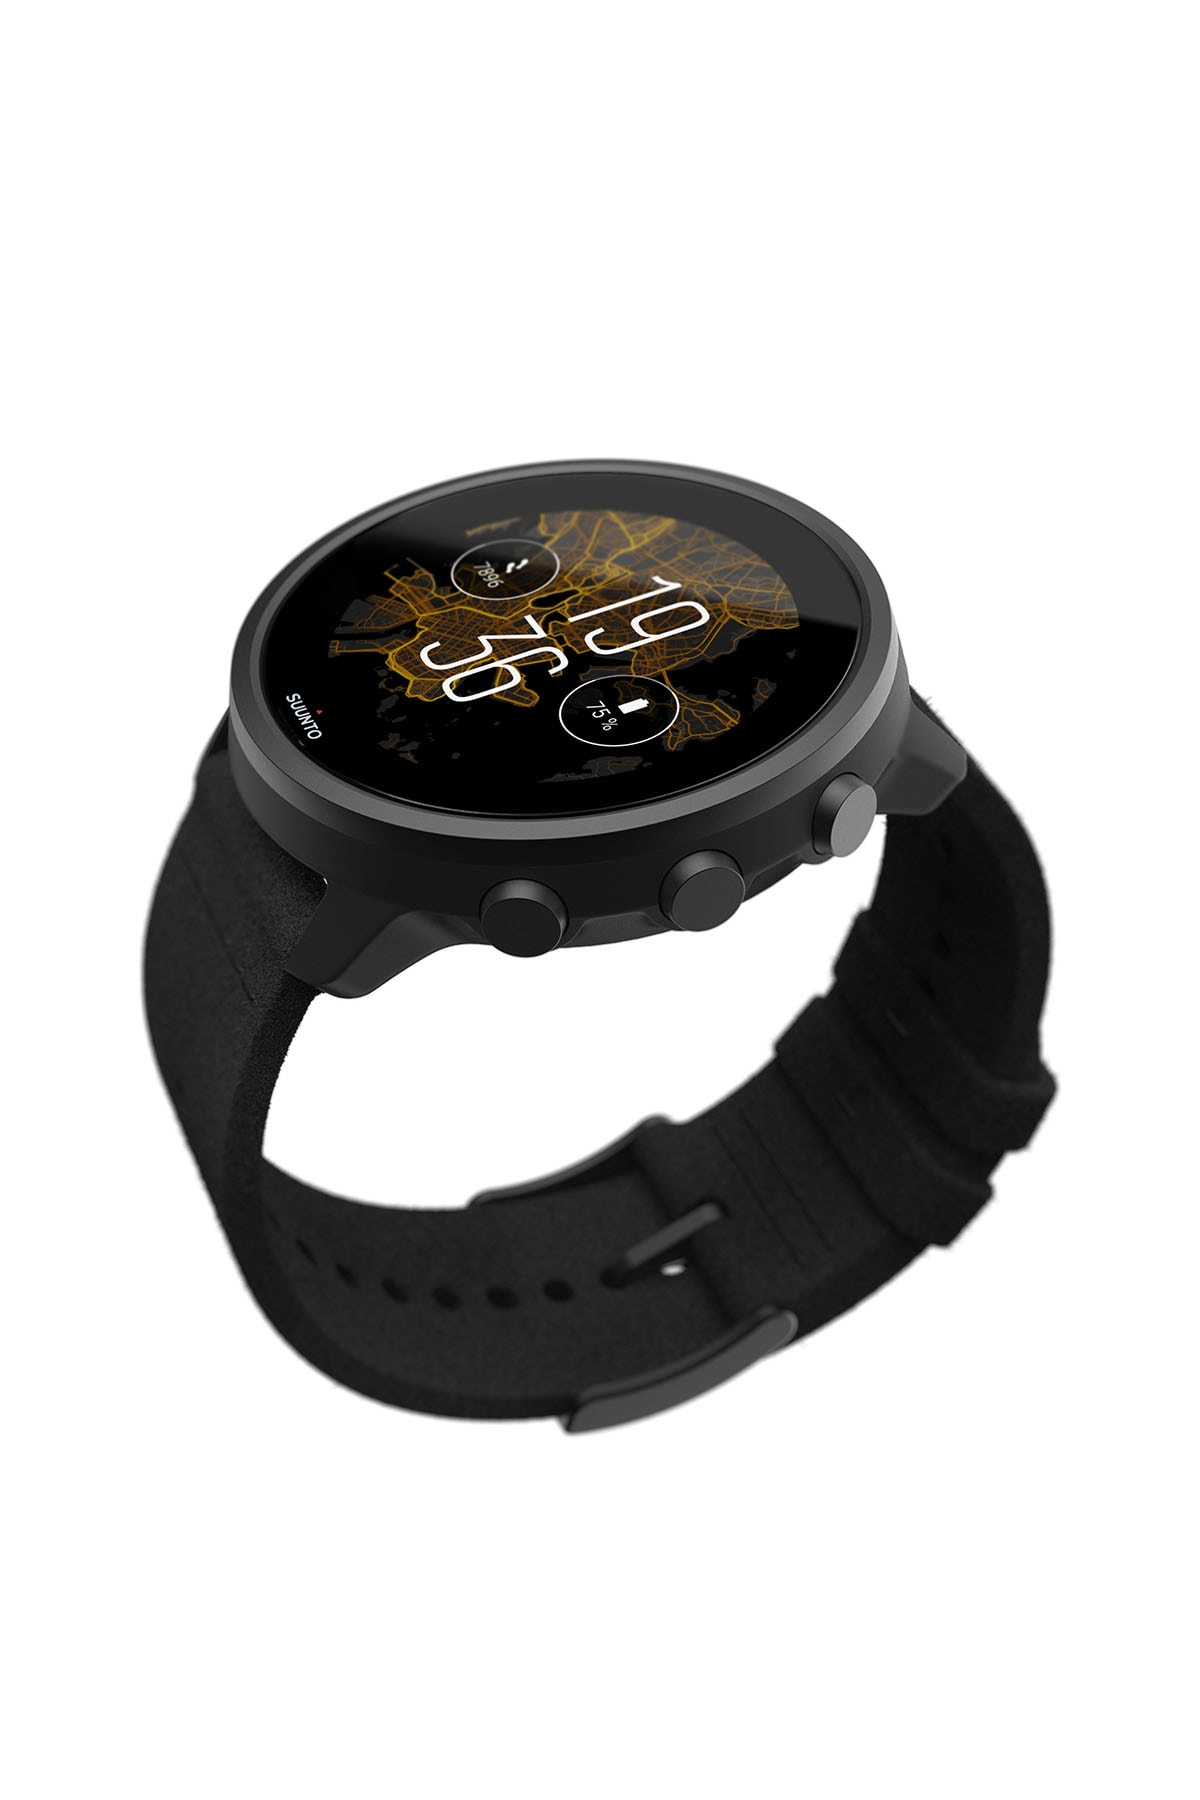 ミニマルなデザインの最新型スマートウォッチ スント 7 チタニウム が登場 SUUNTO 7 TITANIUM smart watch release info